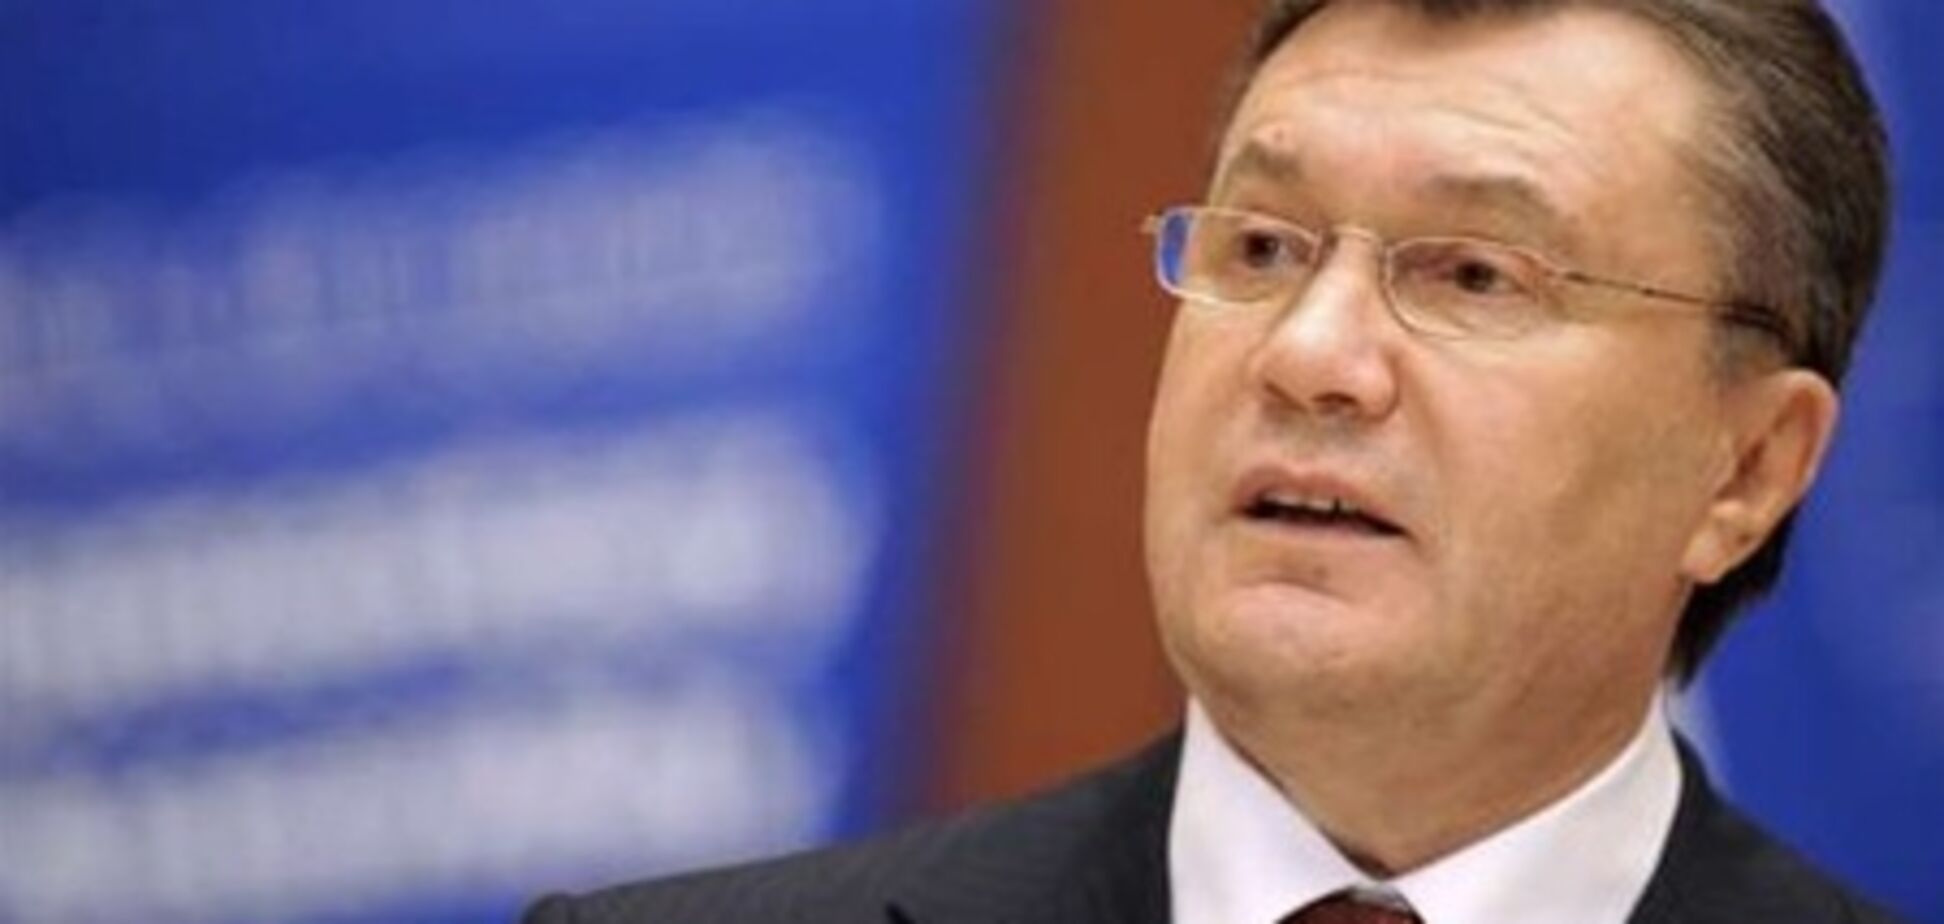 Янукович: Украину отбросили назад 5 лет правления Ющенко